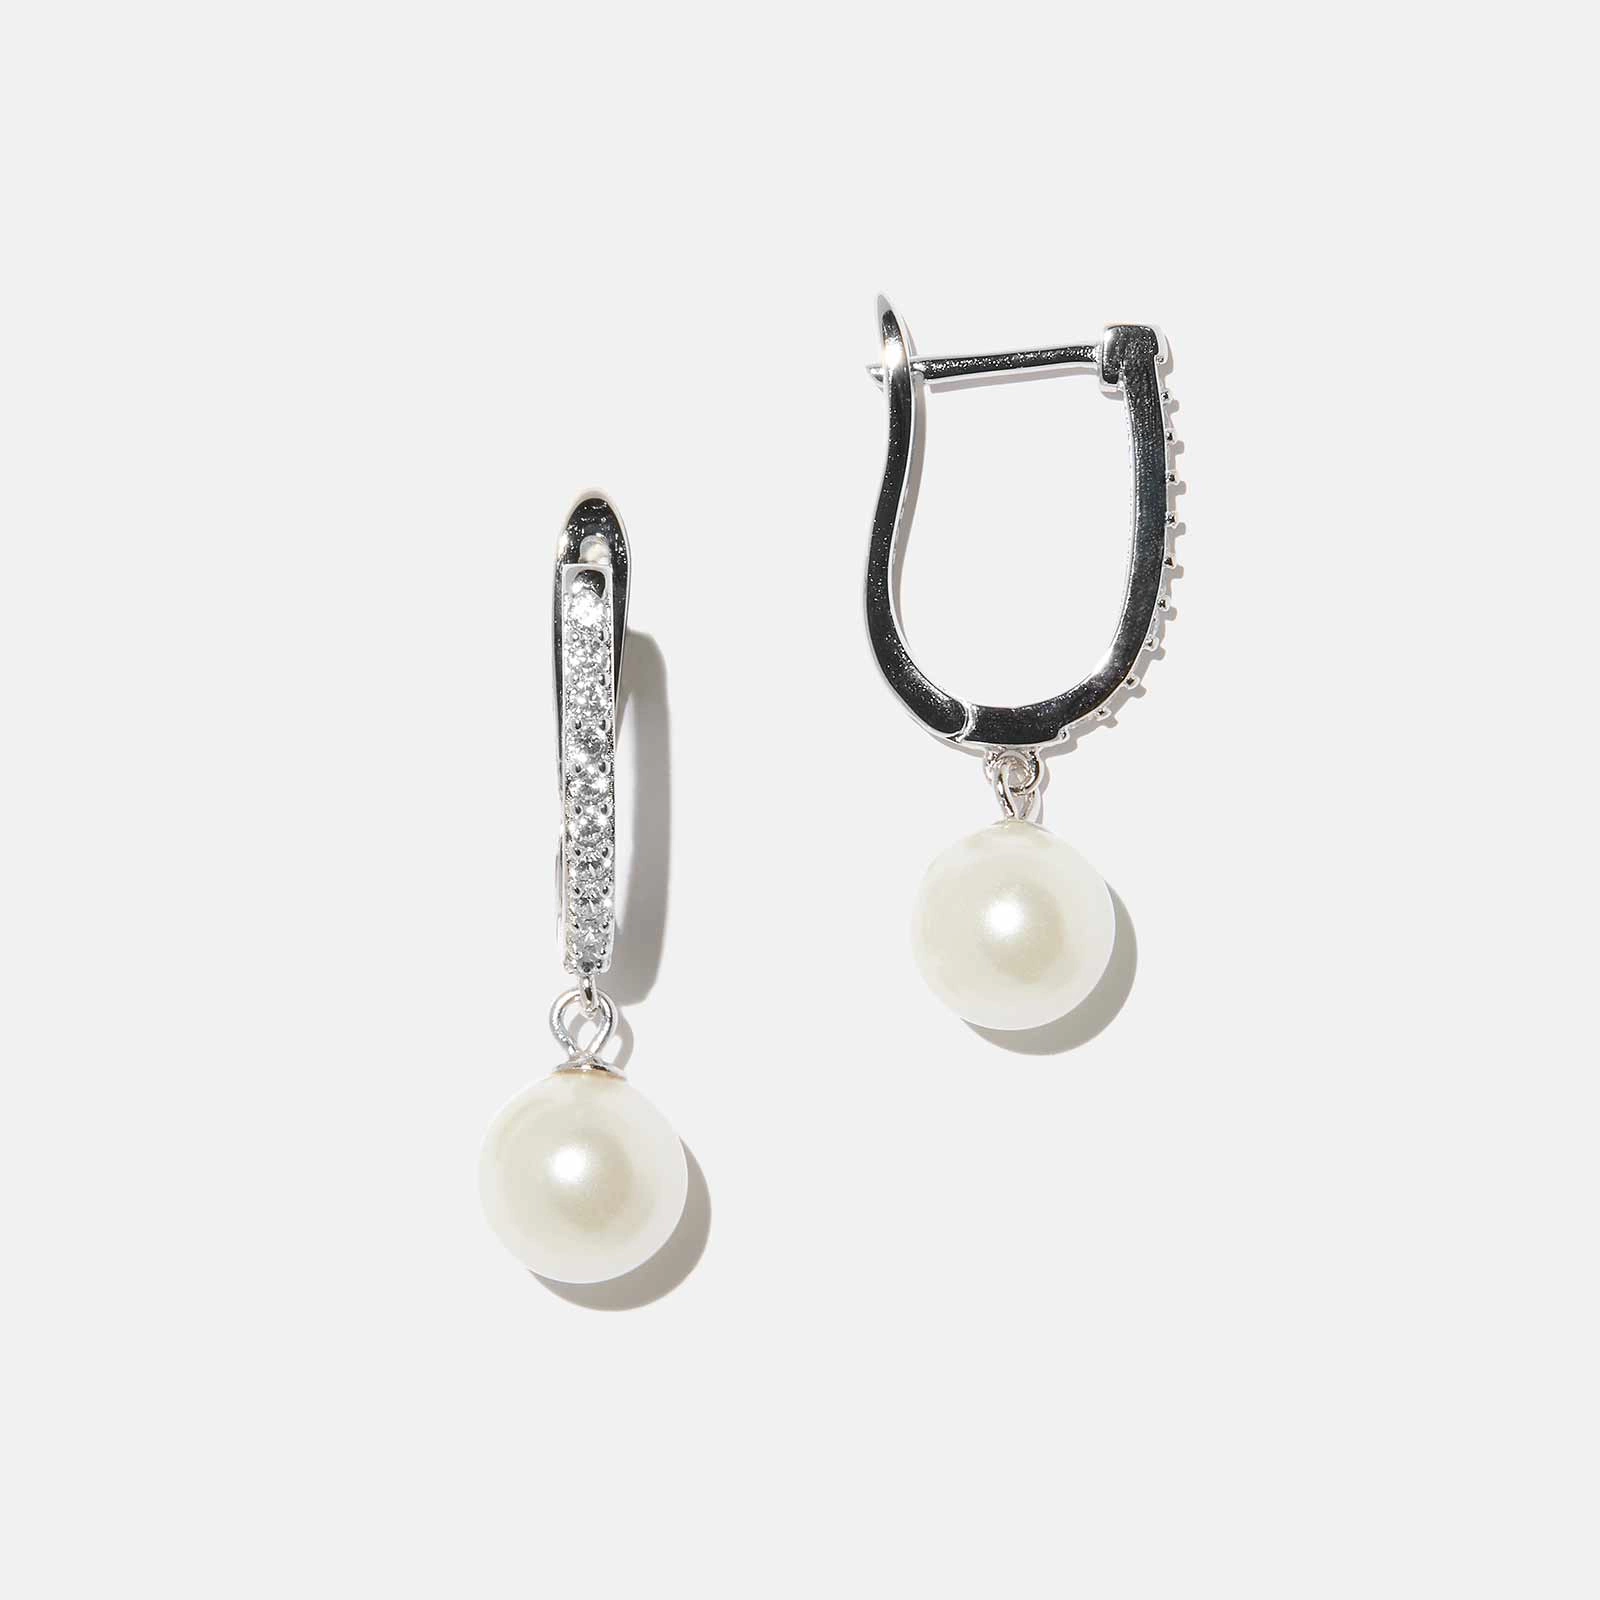 Örhängen i äkta silver - bågar, hängande Shell pearls